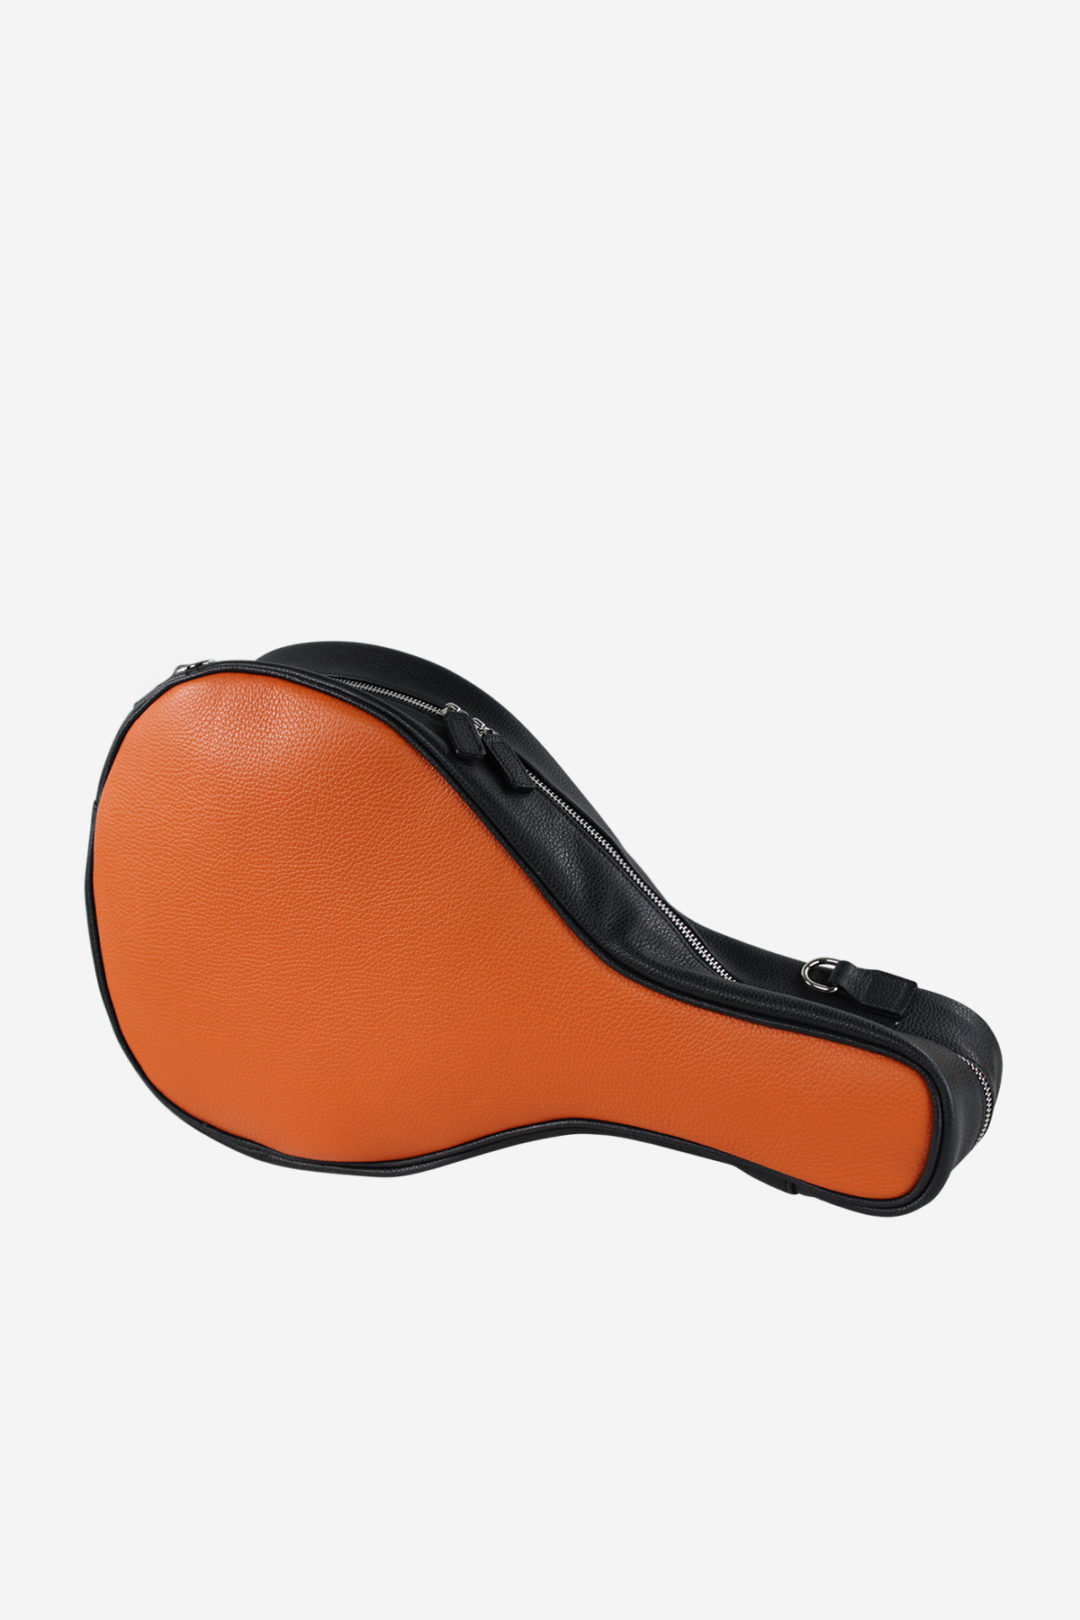 TERRIDA Modern Padel Racket Bag Real Waterproof Leather Handmade 